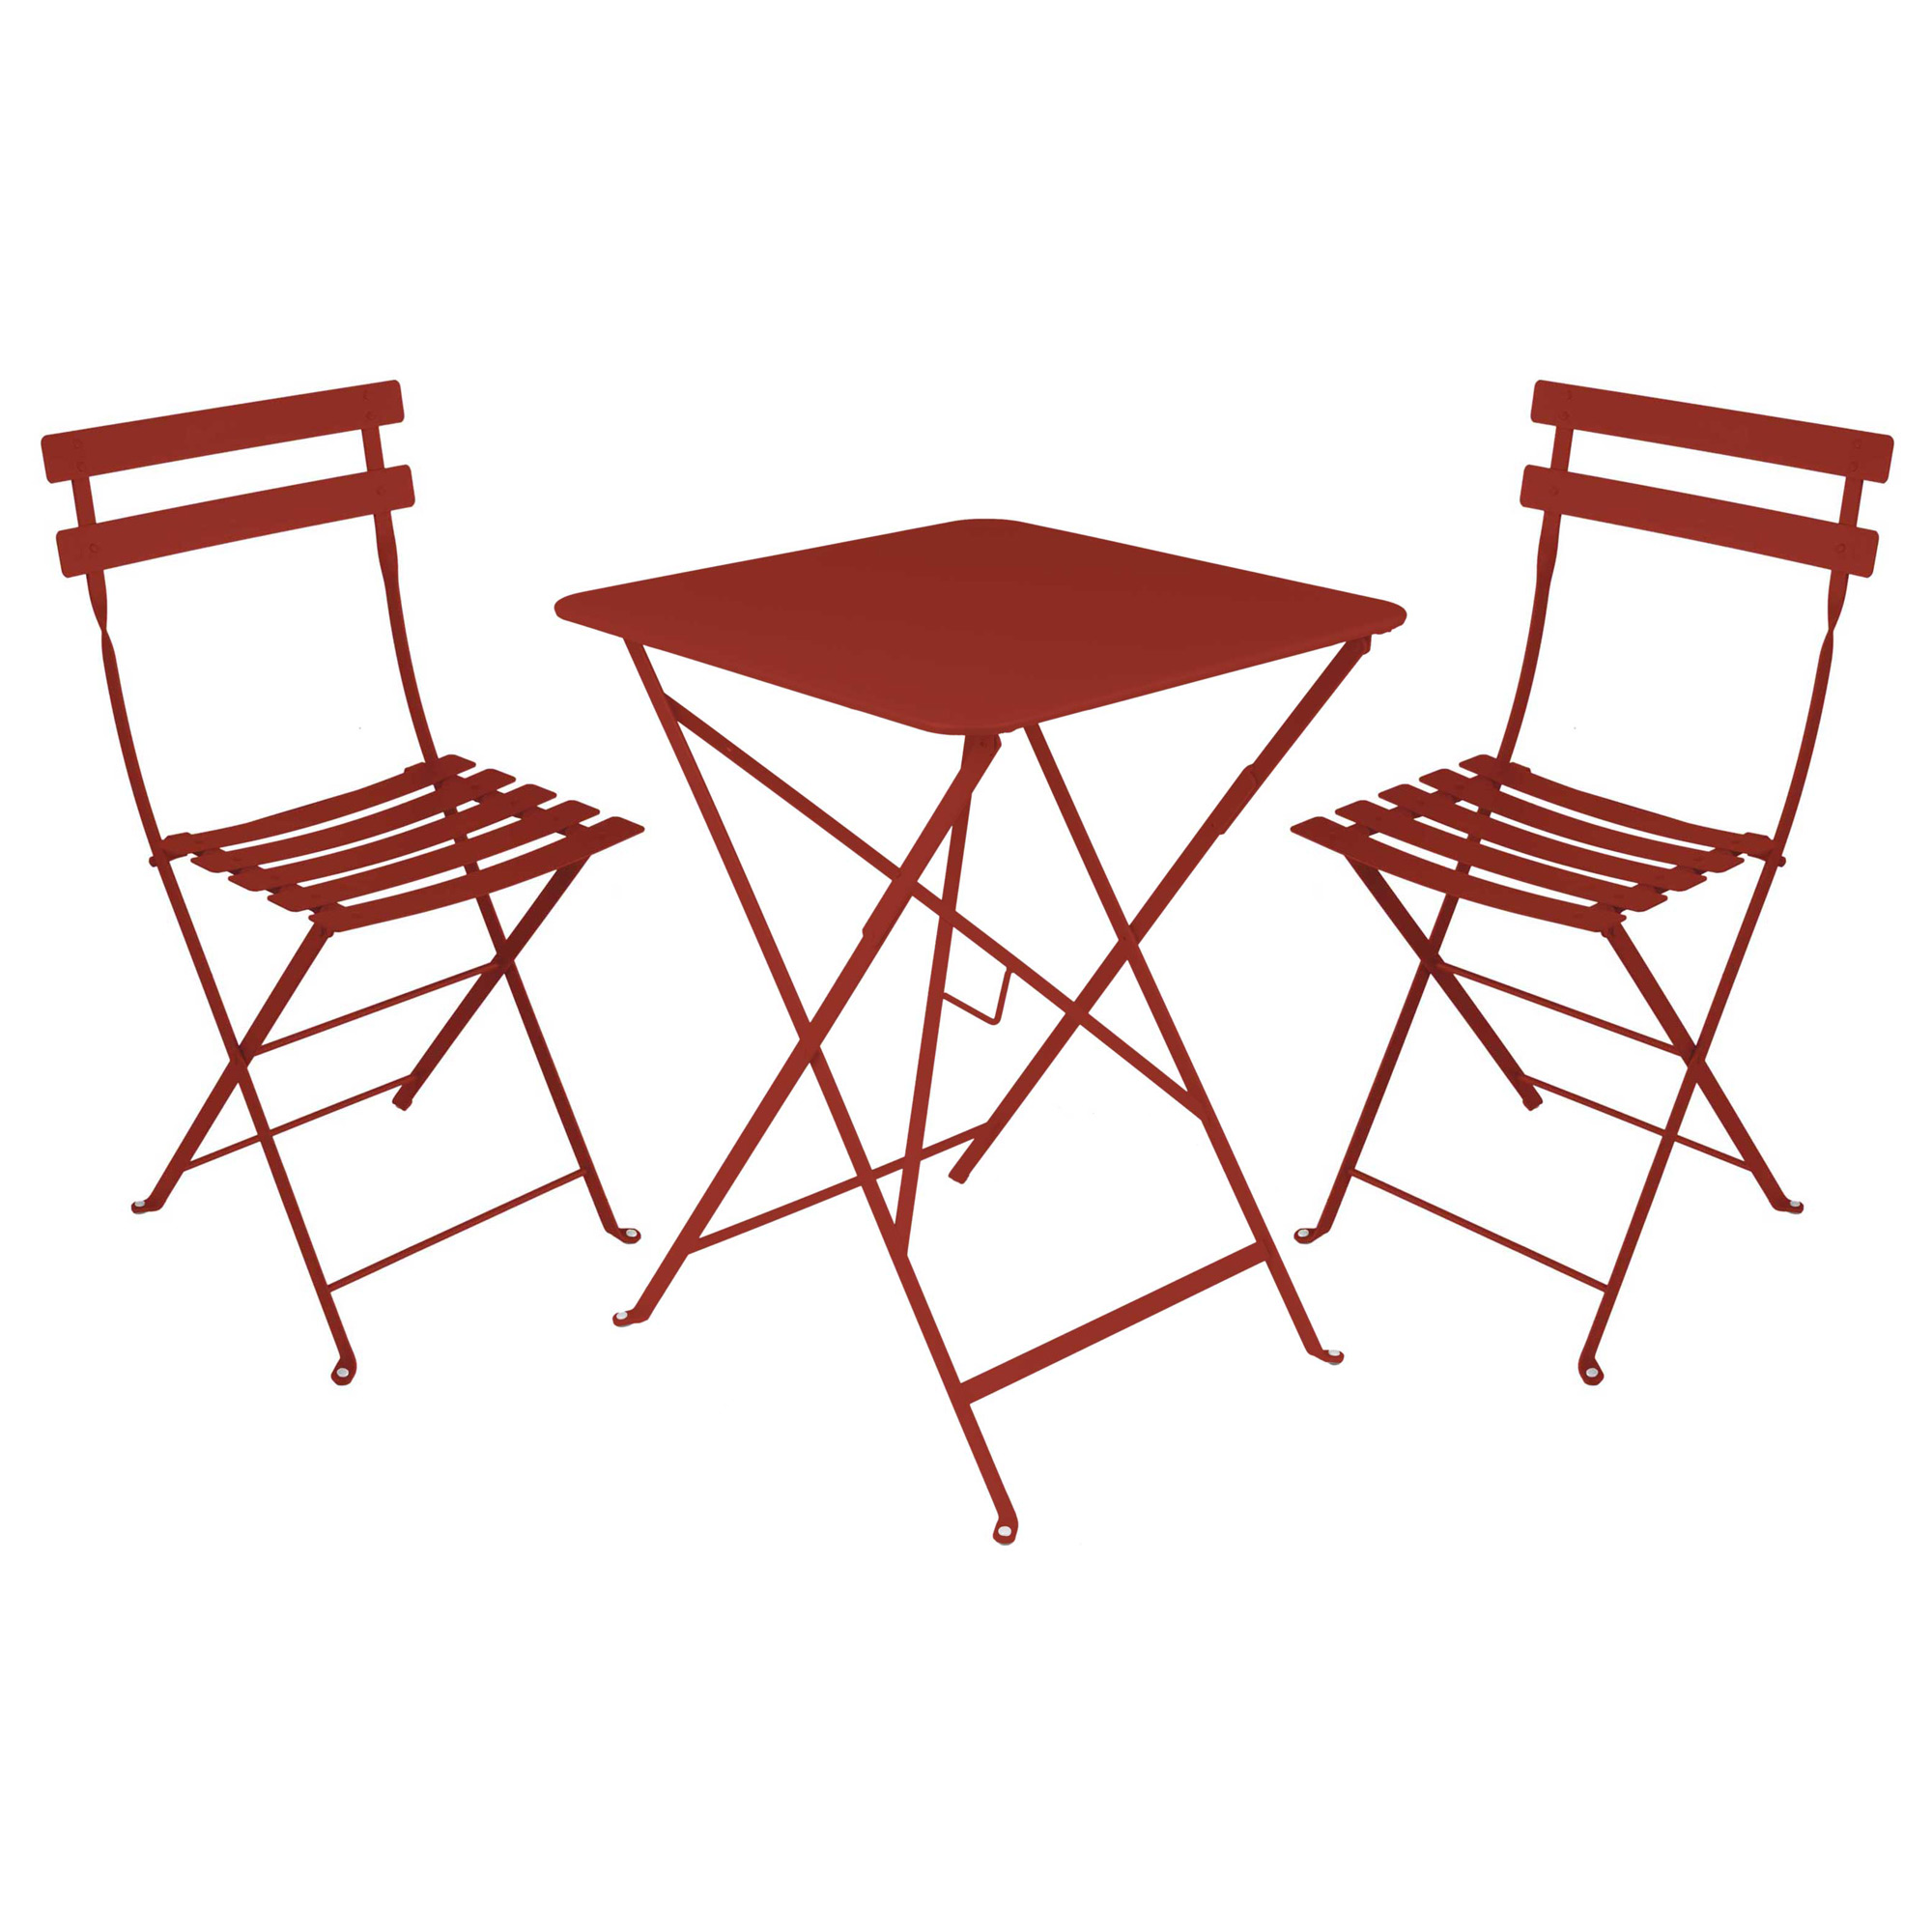 the table salon pliante tunisie housse chaise haute fauteuil esthetique pour galette jardin bois